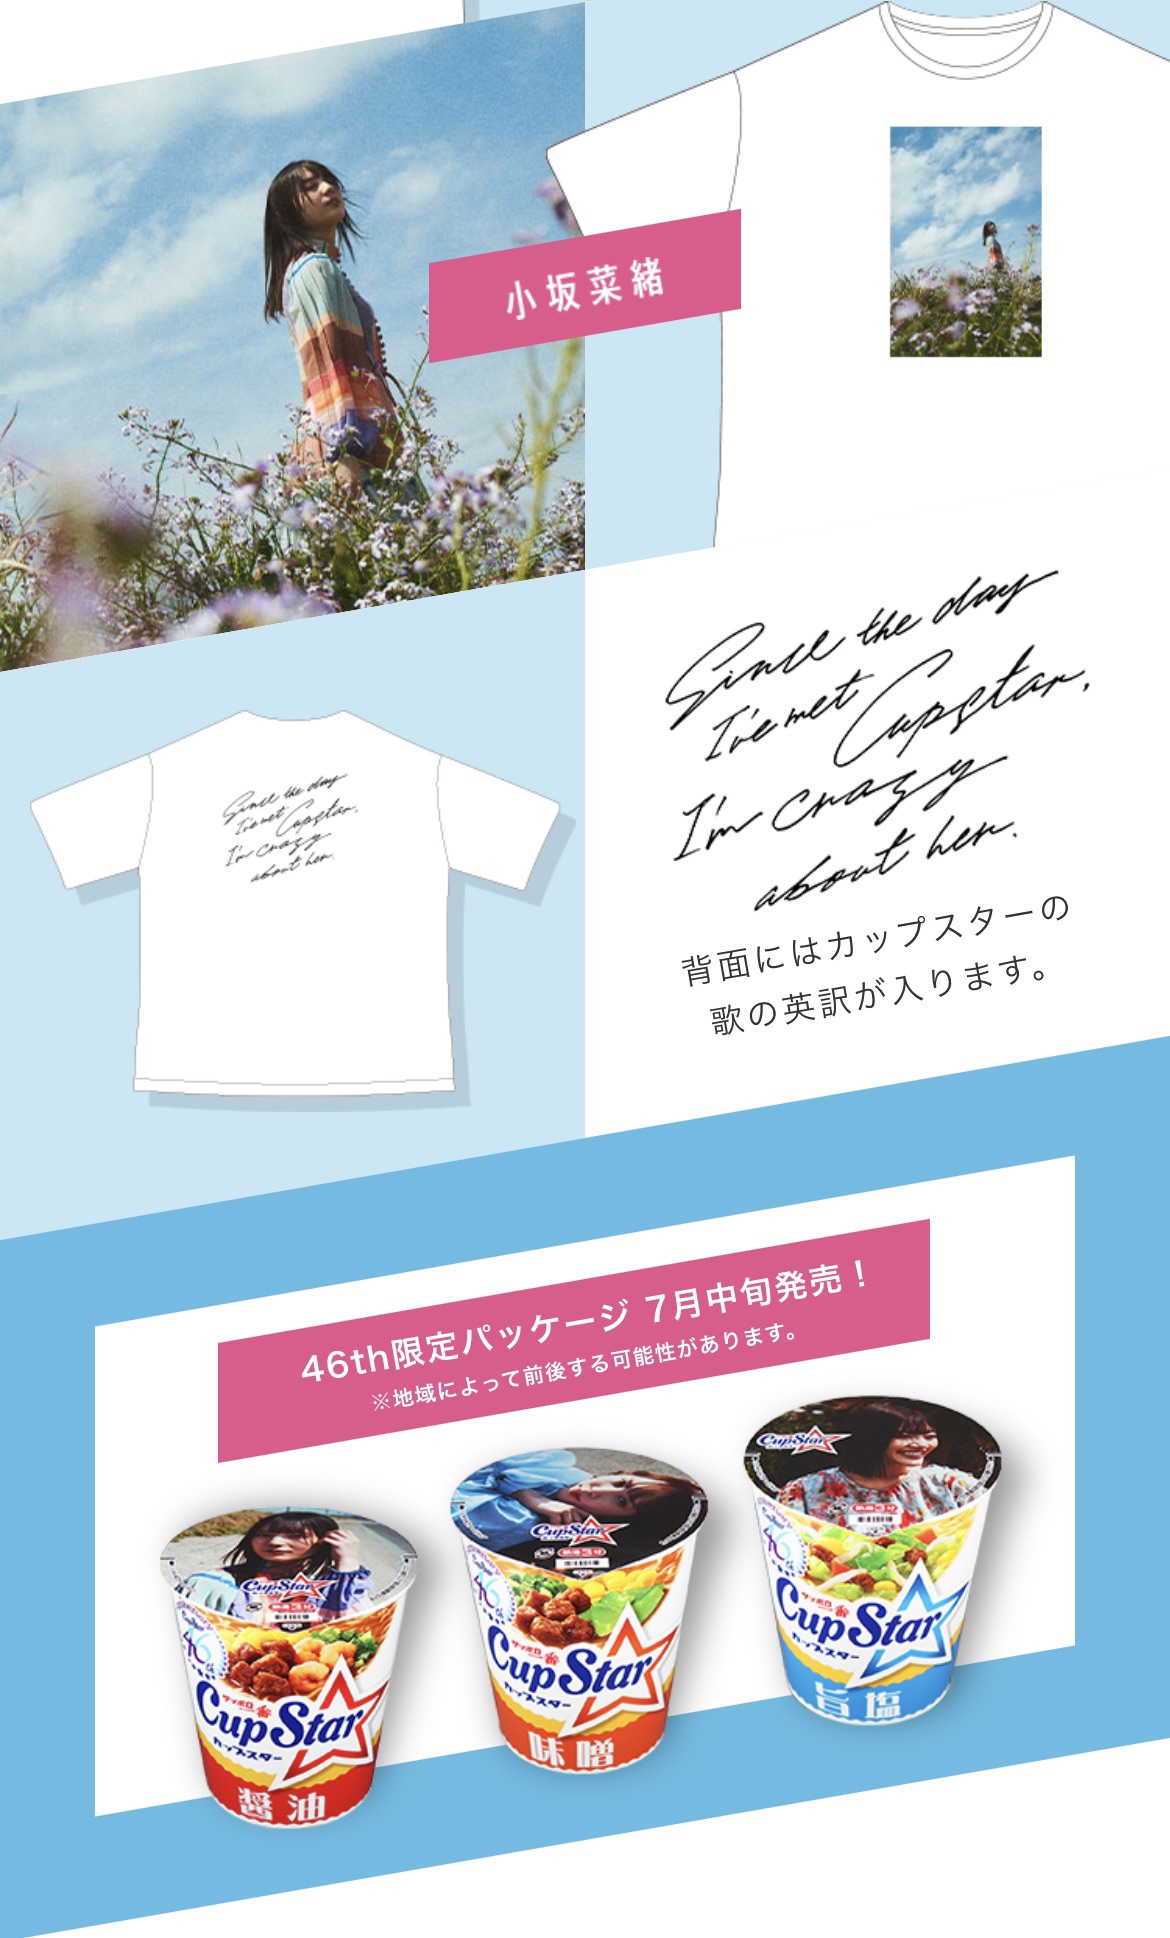 カップスター 日向坂46 オリジナルフォトTシャツ 小坂菜緒 Lサイズ